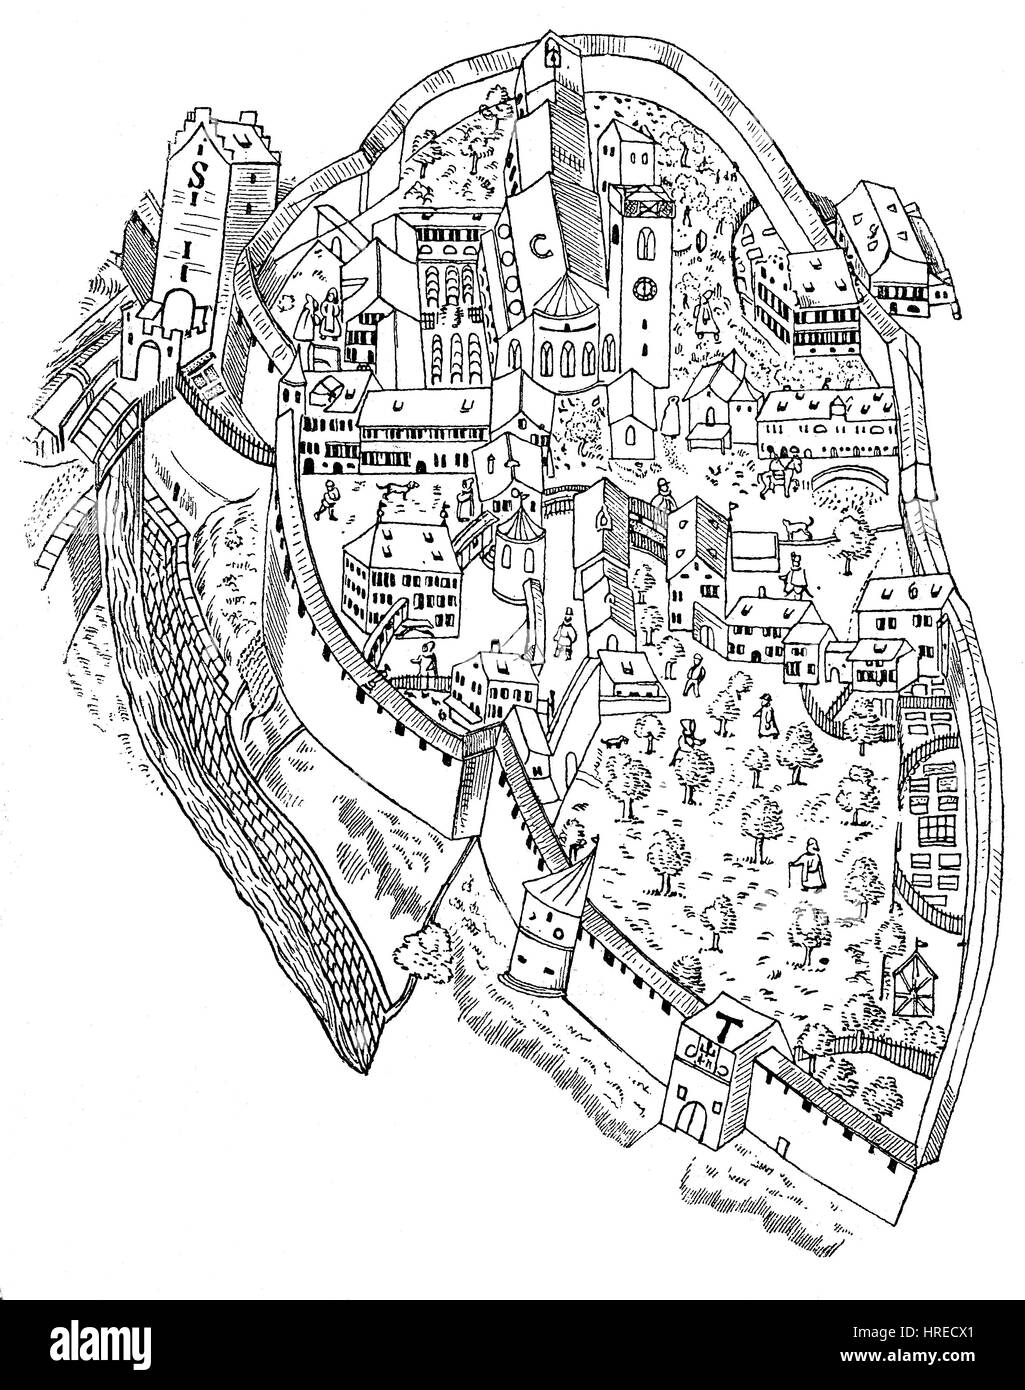 La plus ancienne vue du monastère de Saint-gall ou traditionnellement St Gall, parfois en allemand Sankt Gallen, un plan de la ville de 1596, la Suisse, la reproduction d'une gravure sur bois du xixe siècle, 1885 Banque D'Images